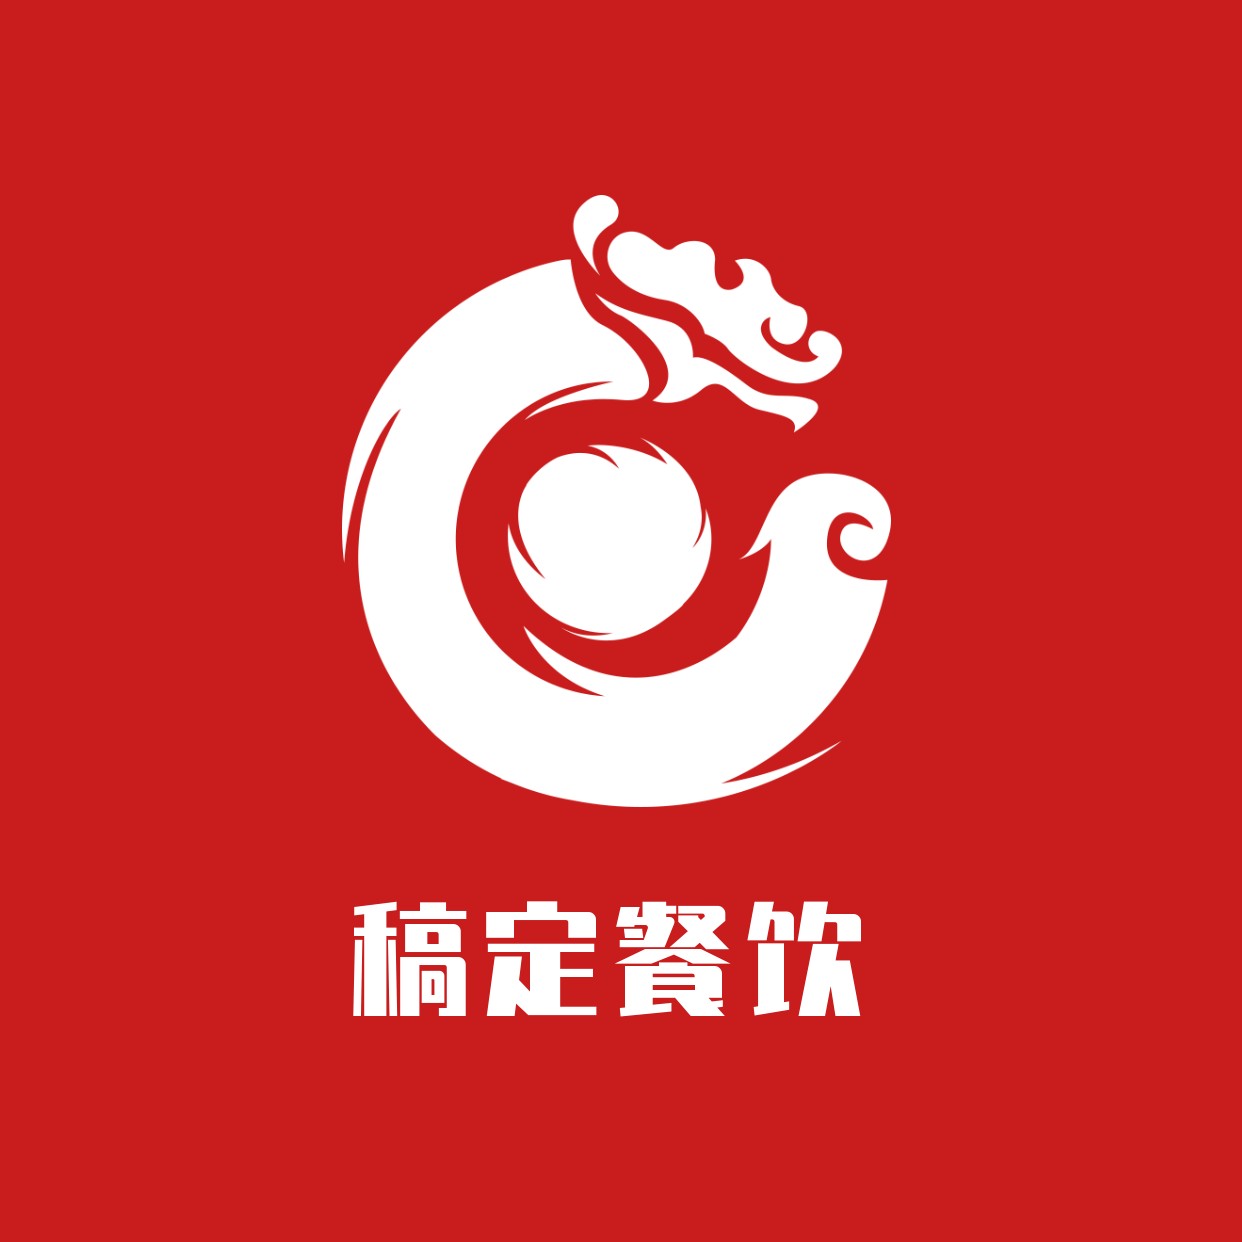 Logo头像餐饮美食简约中国风店标预览效果